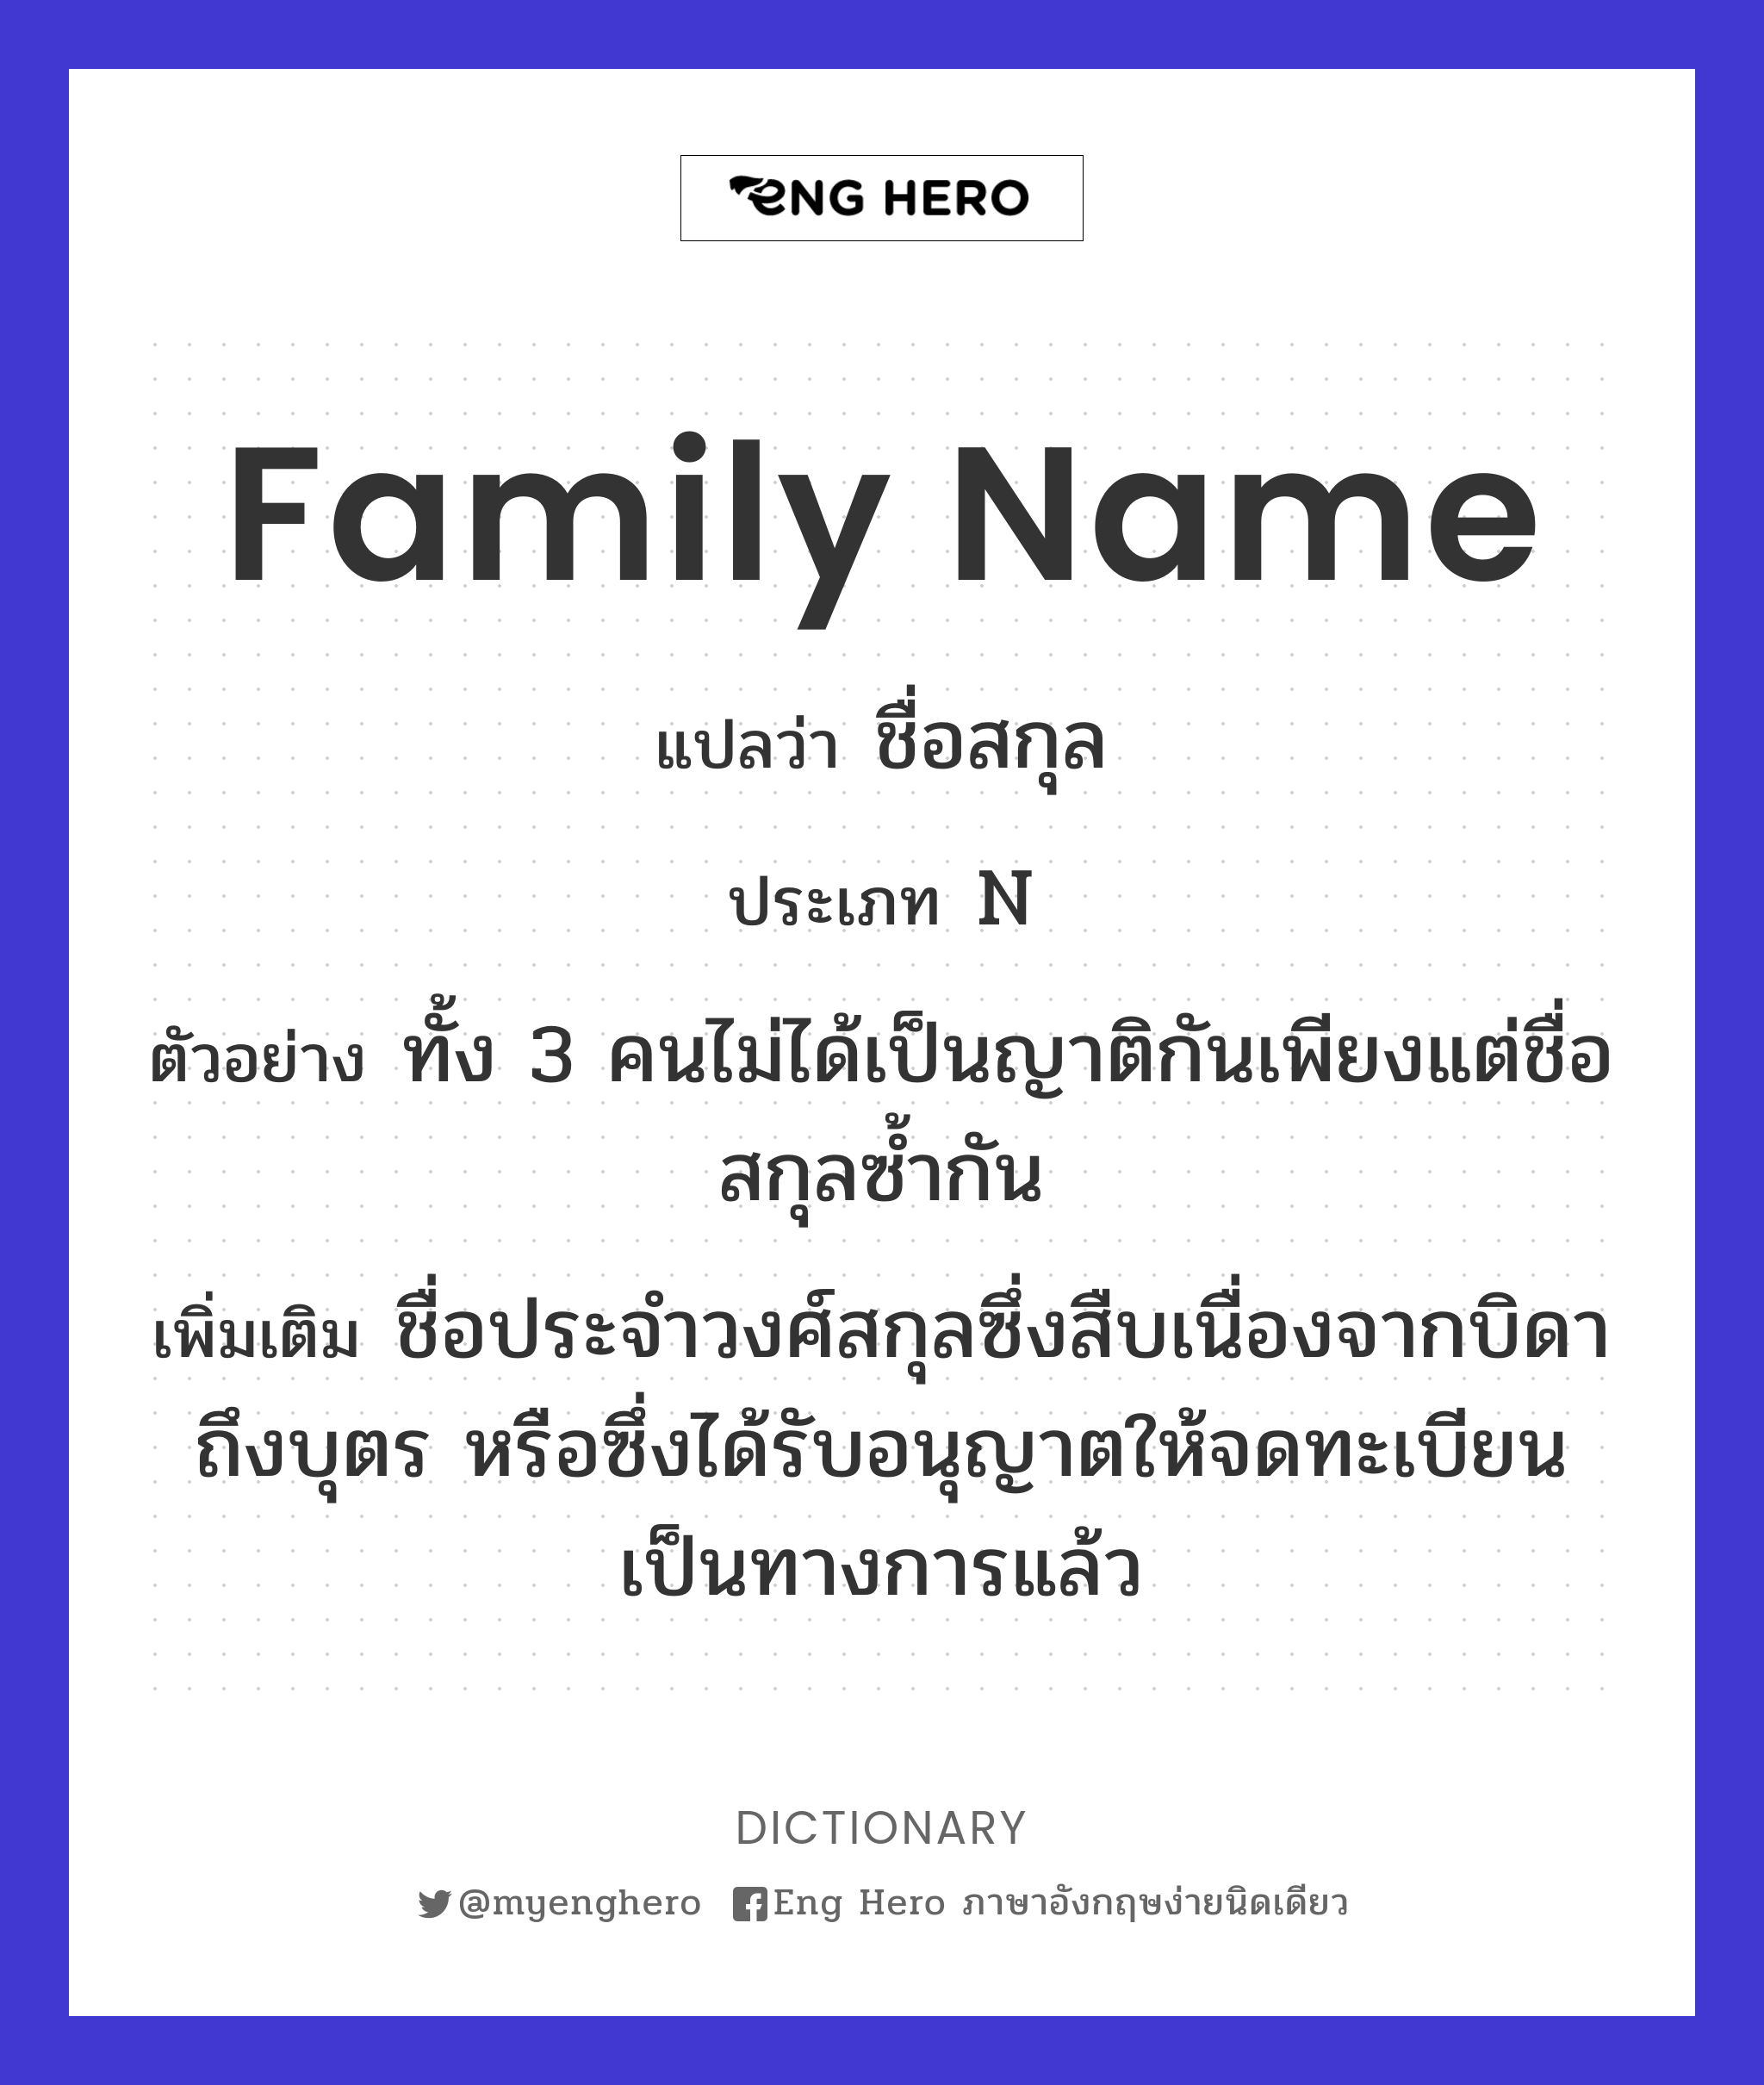 family name